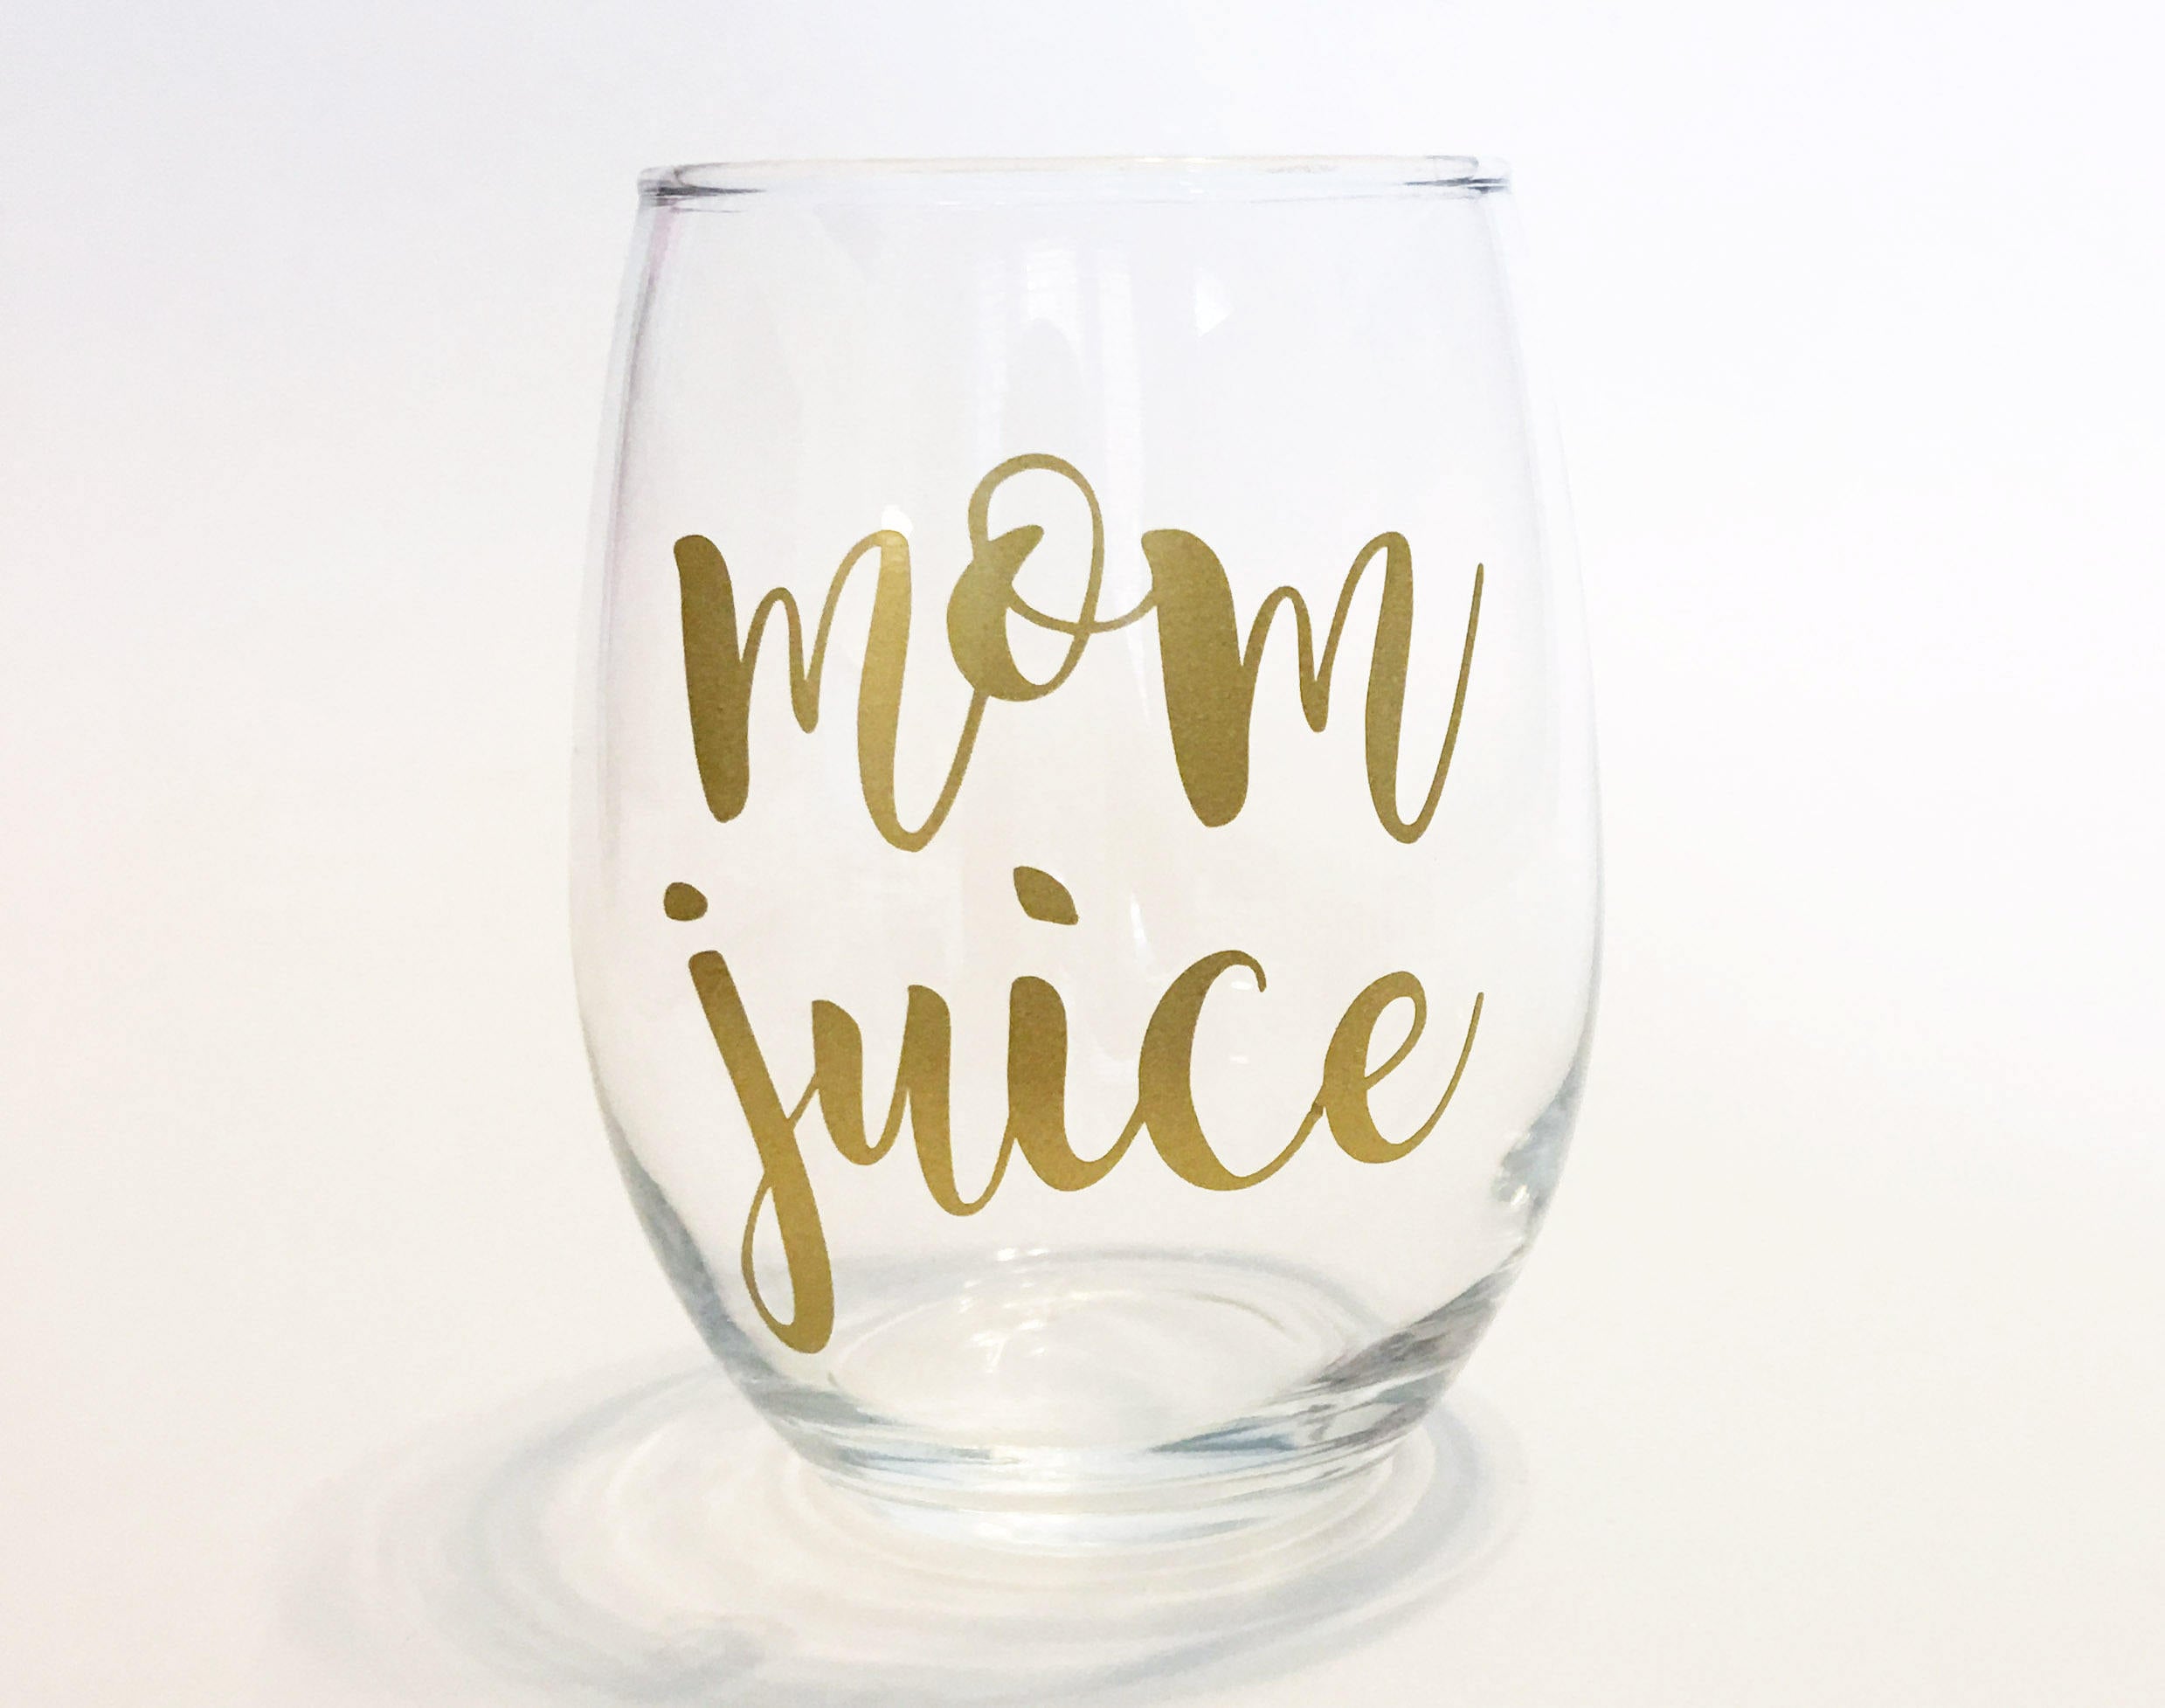 Mom Juice Wine Glasses on